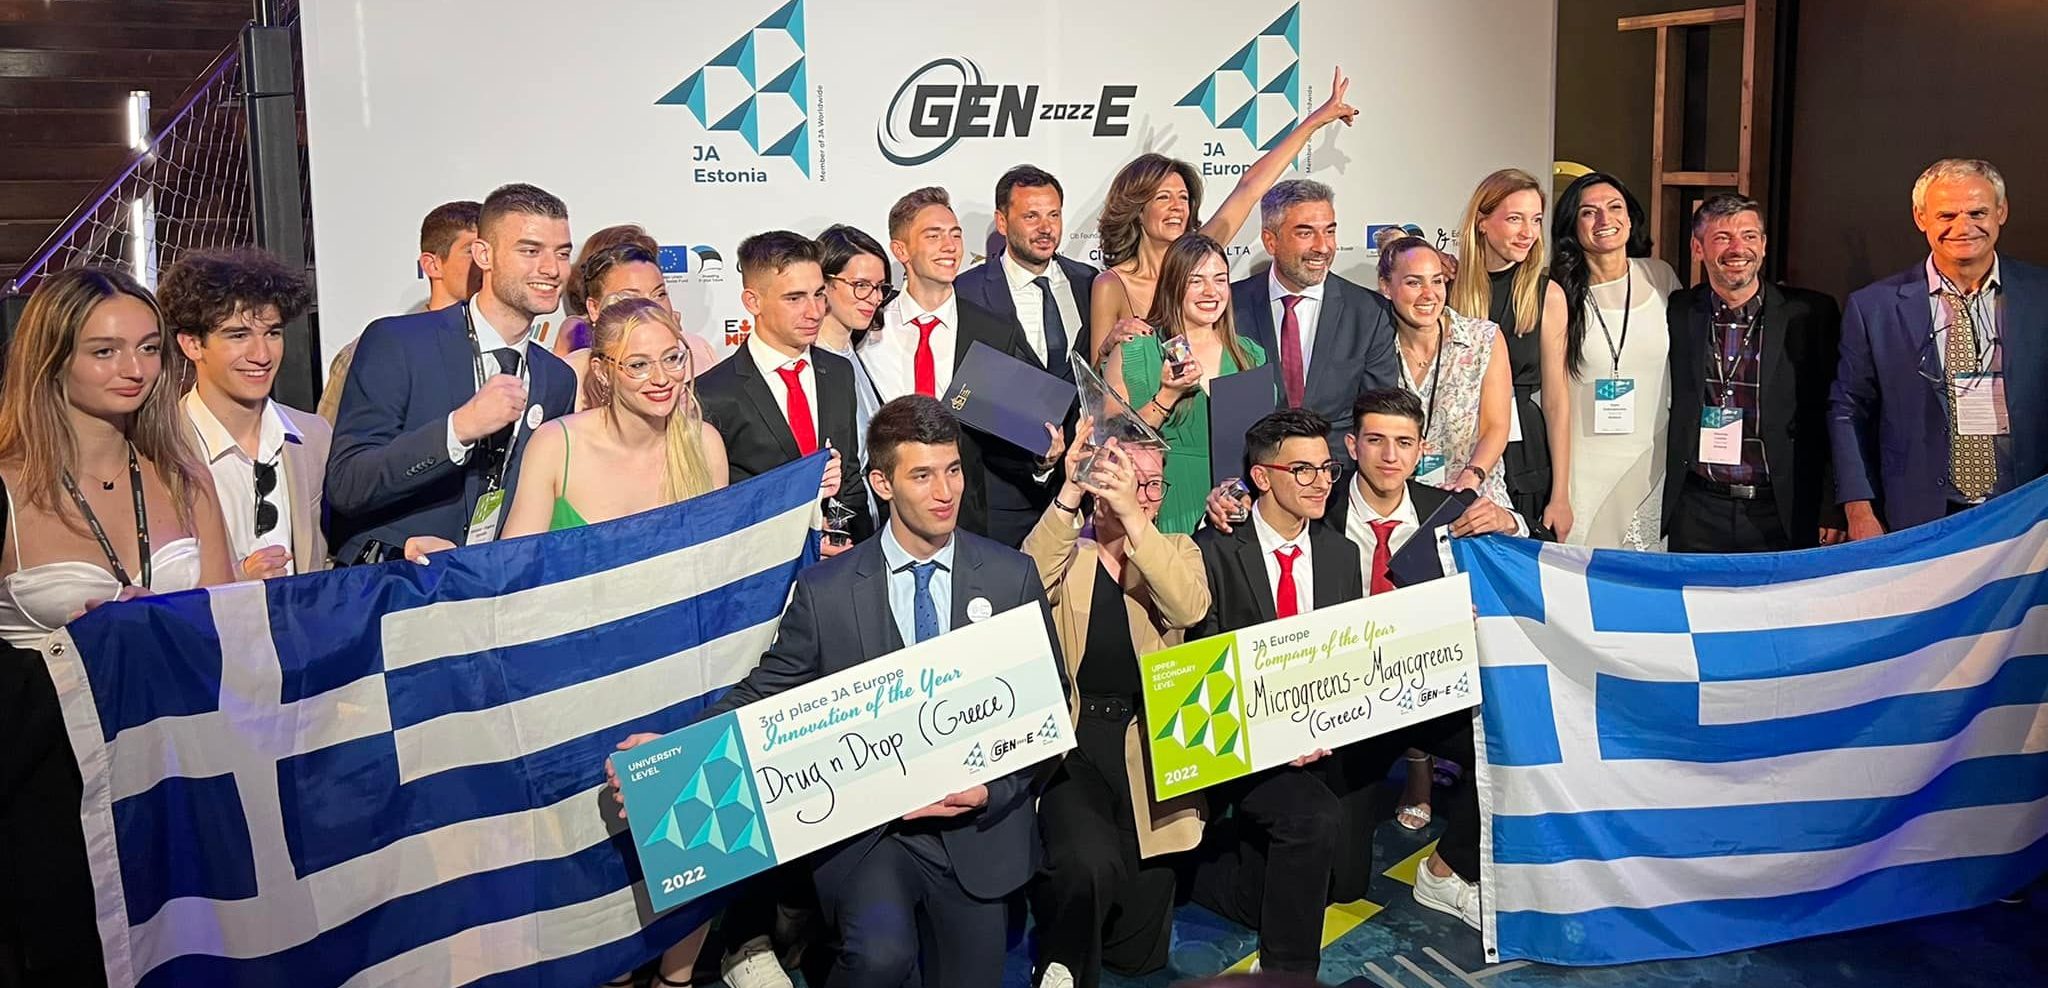 Ελληνικός θρίαμβος 8 βραβείων στο Ευρωπαϊκό φεστιβάλ νεανικής καινοτομίας και επιχειρηματικότητας – Στην κορυφή οι μαθητές, στην τρίτη θέση οι φοιτητές